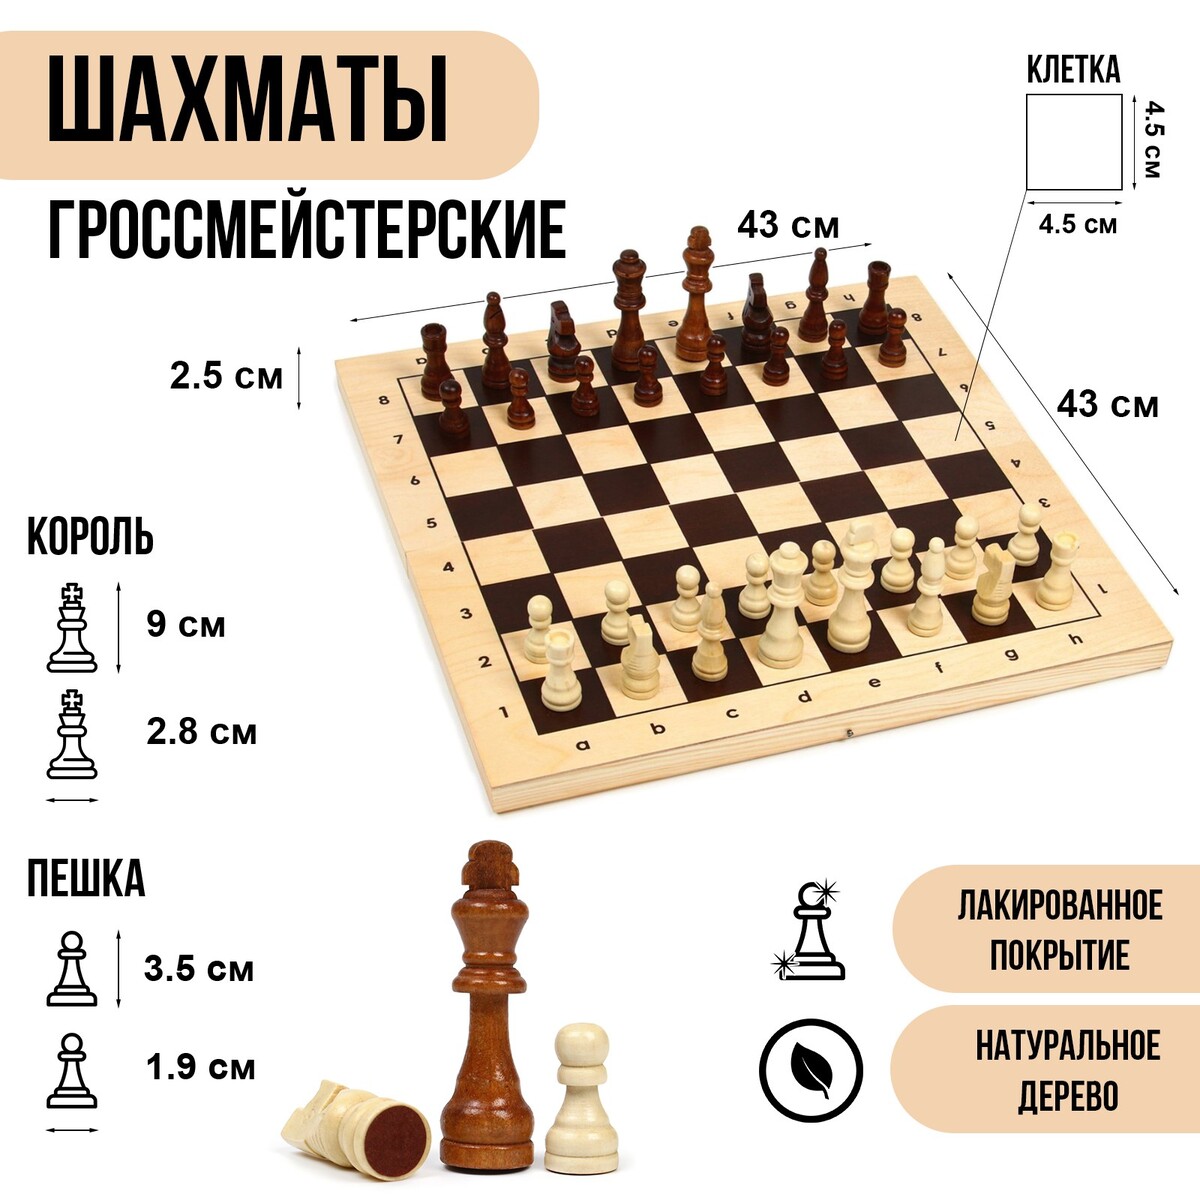 фото Шахматы деревянные гроссмейстерские, турнирные 43 х 43 см, король h-9 см, пешка h-3.5 см no brand